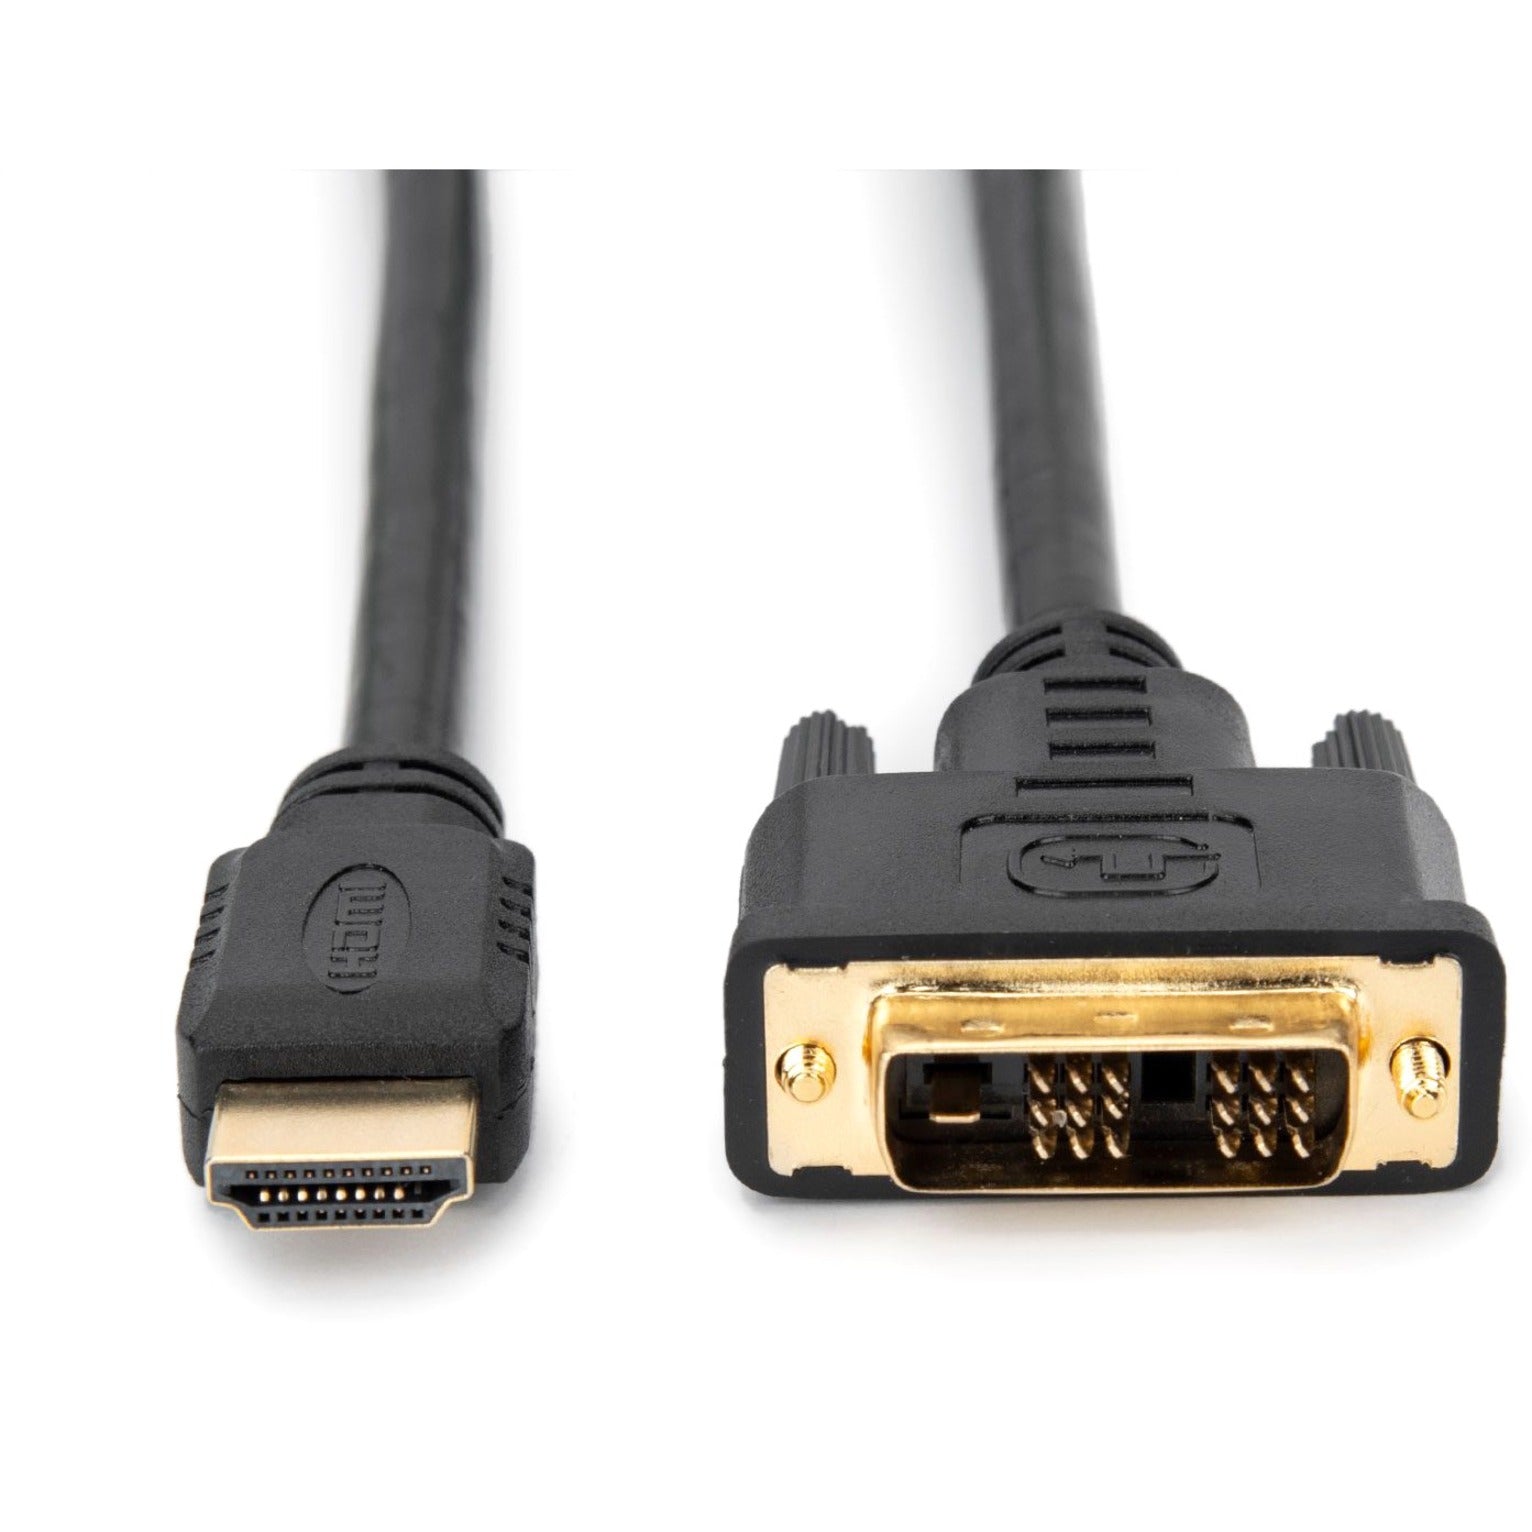 Rocstor Y10C125-B1 高品质 HDMI 到 DVI-D 电缆，10英尺 - 高质量视频连接 罗克斯托尔品牌。将品牌名翻译为“罗克斯托尔”